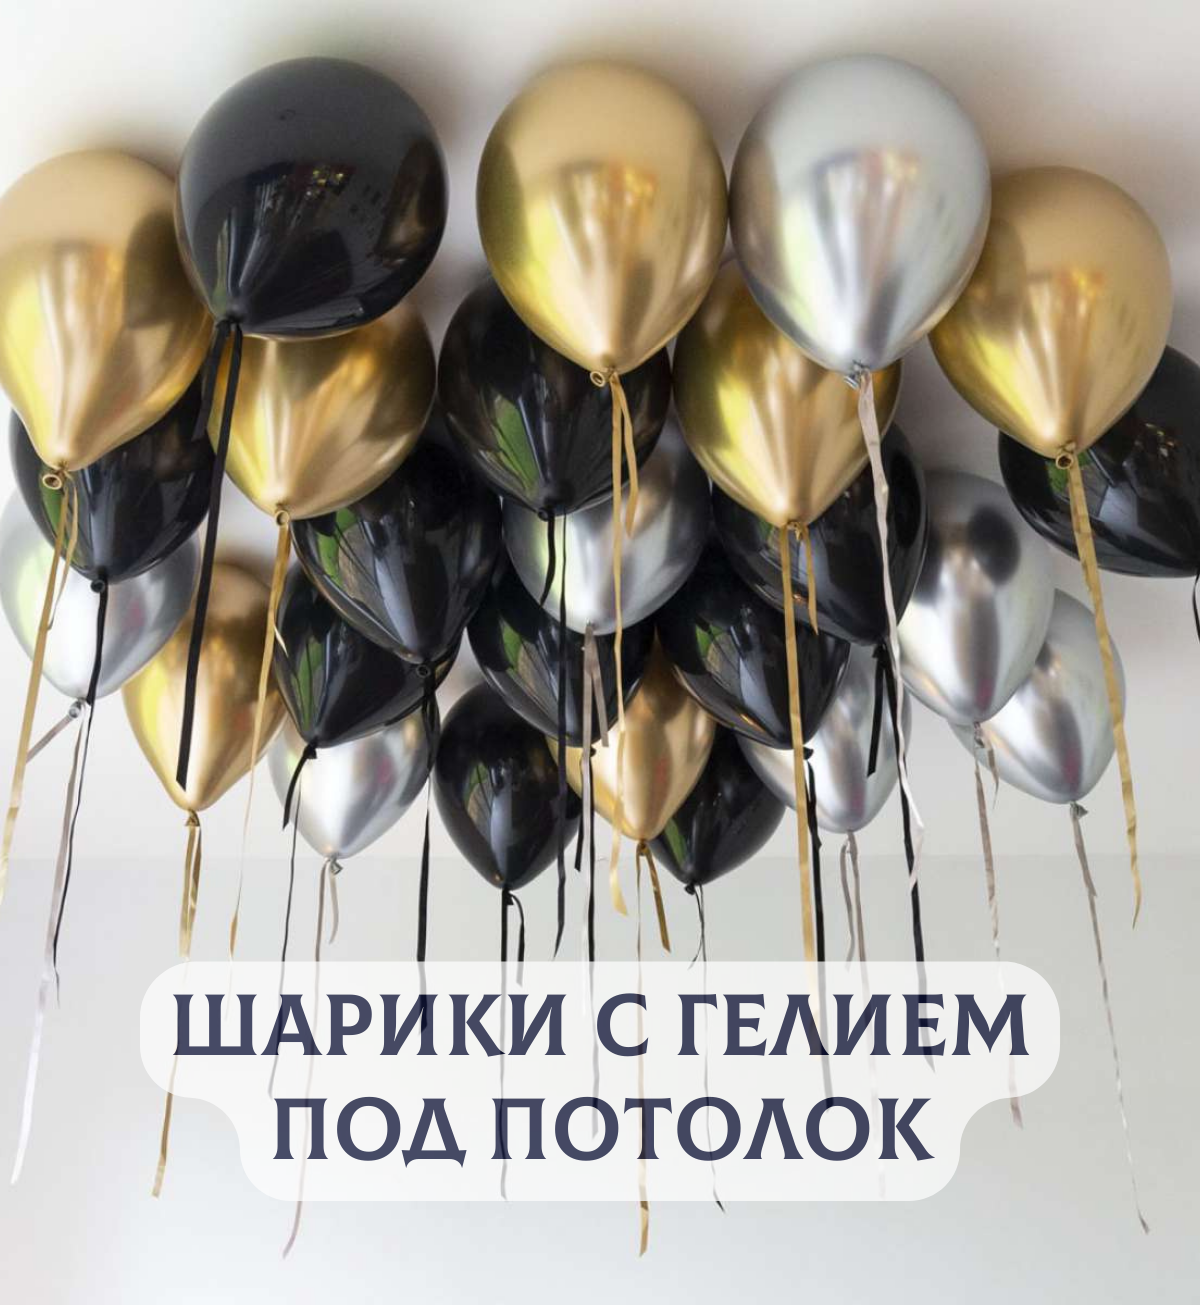 Воздушные шары с гелием под потолок "Черные с серебром и золотом" 10 шт.